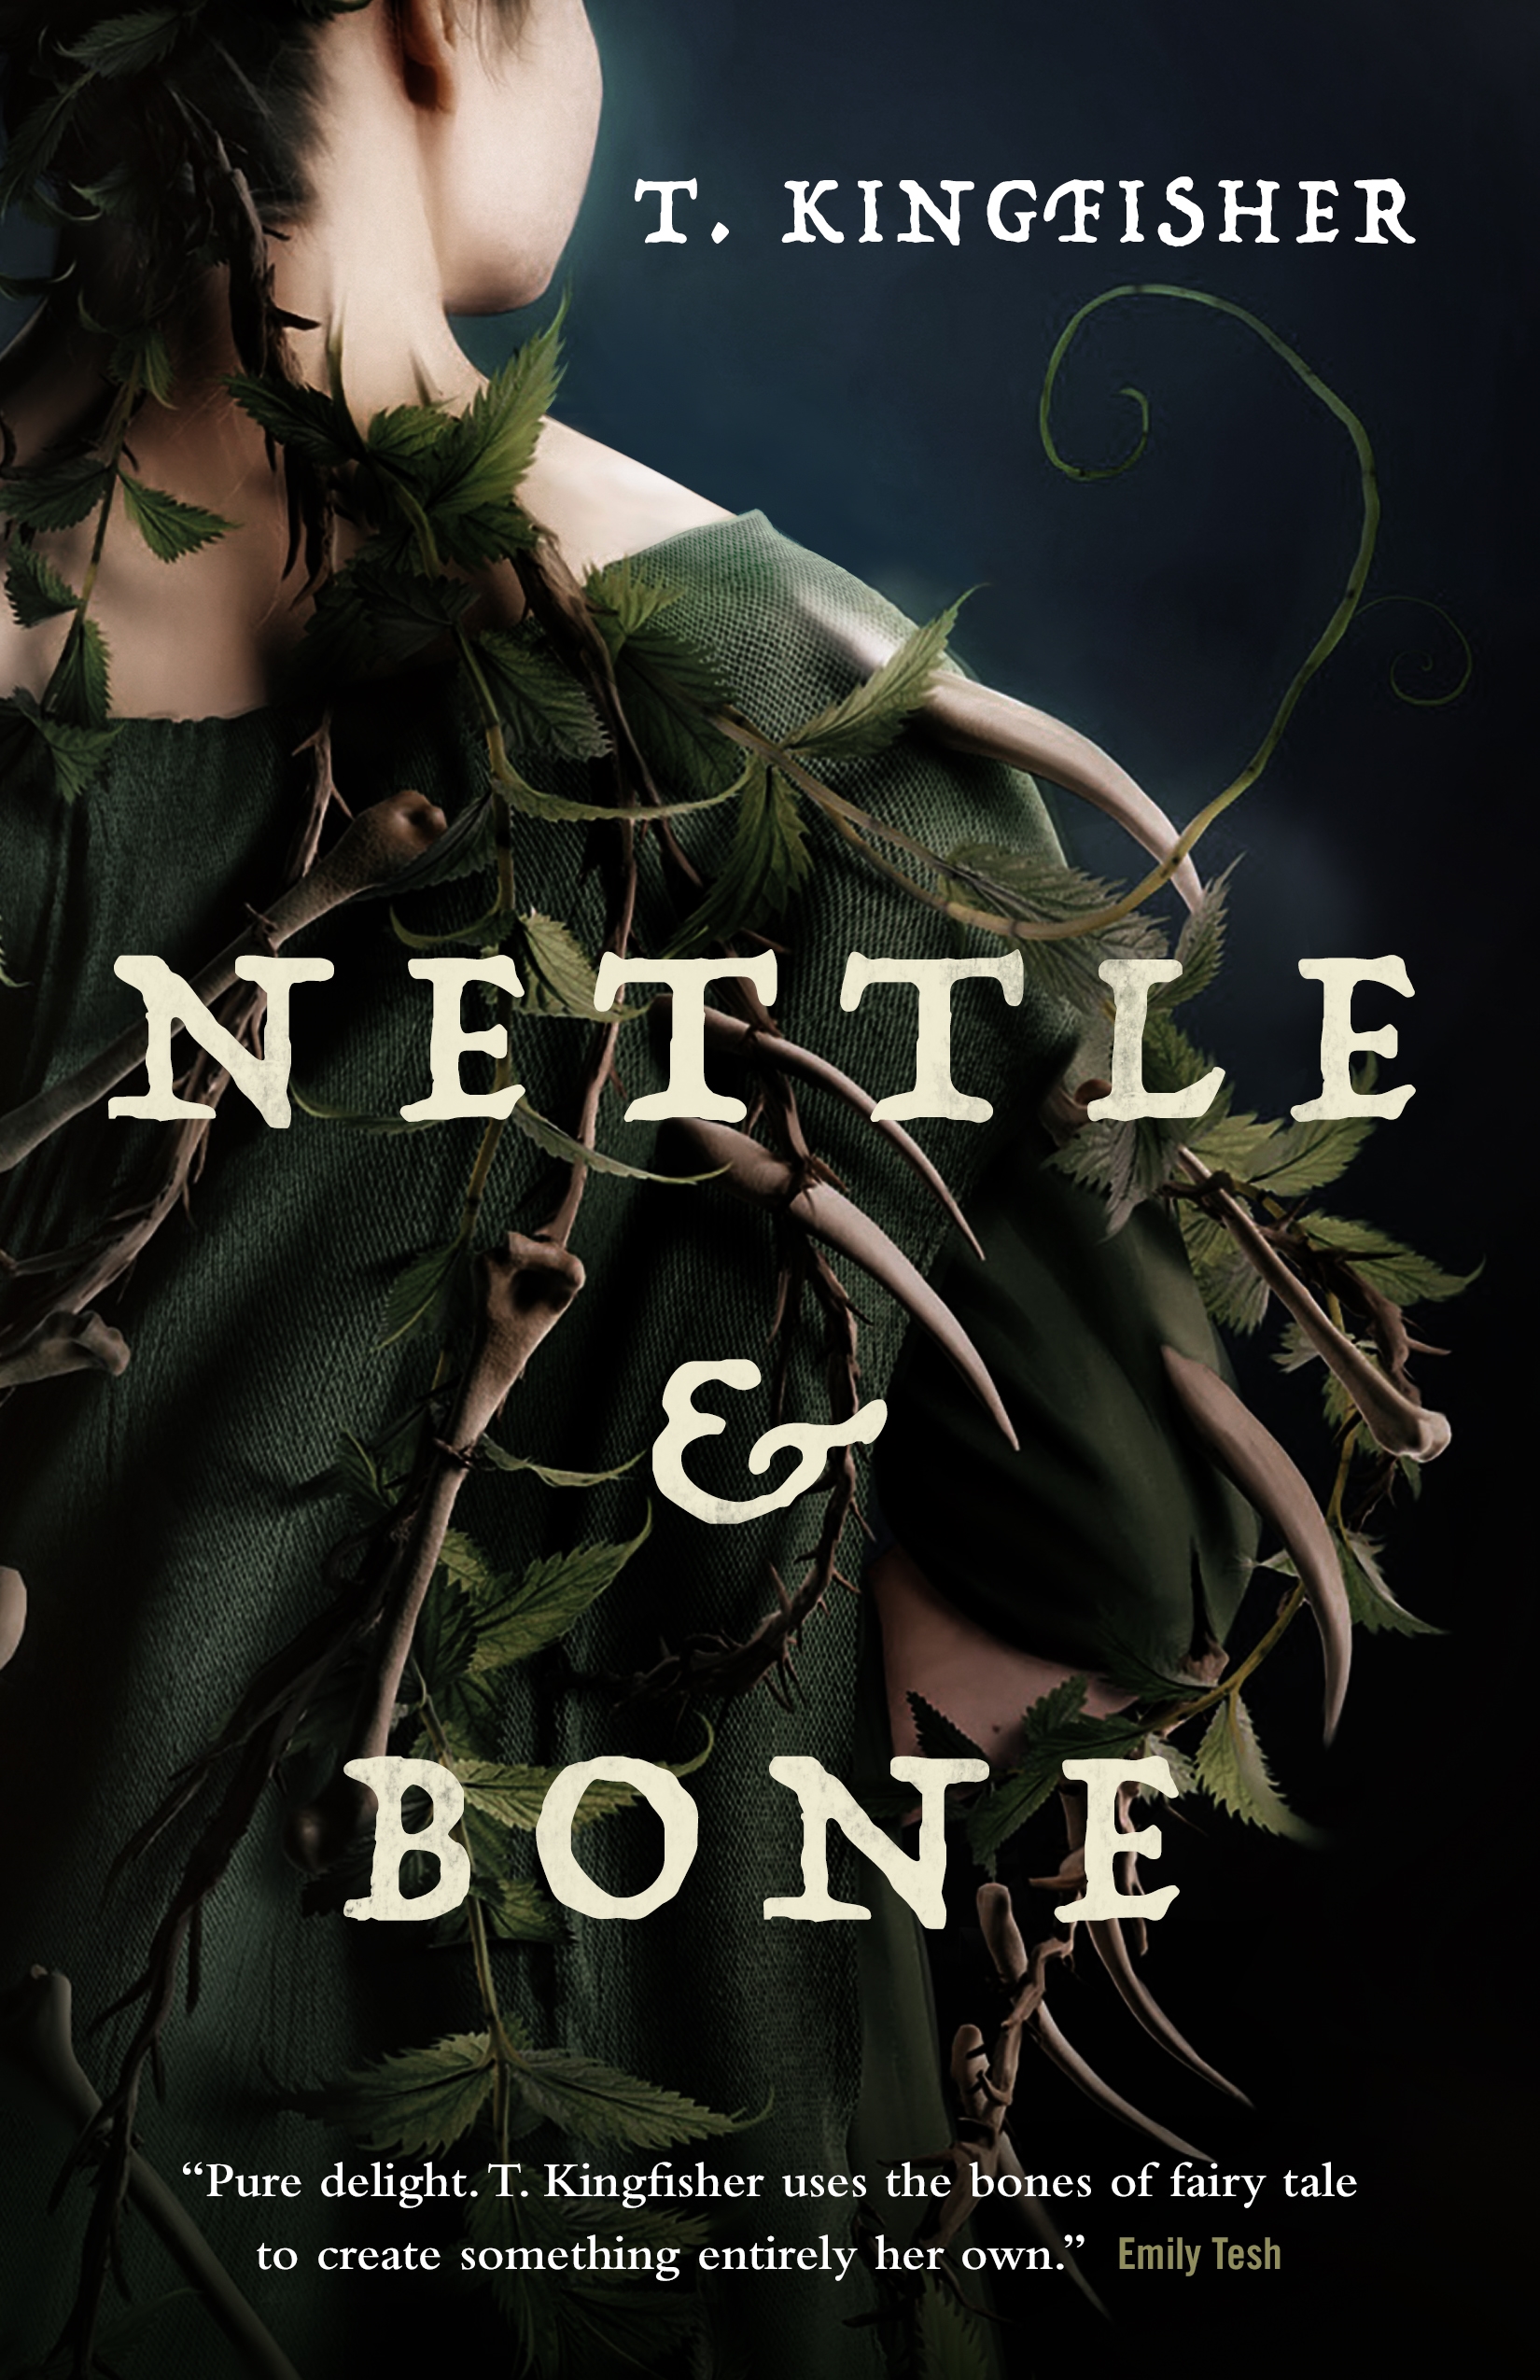 Nettle & Bone by T. Kingfisher PDF Download